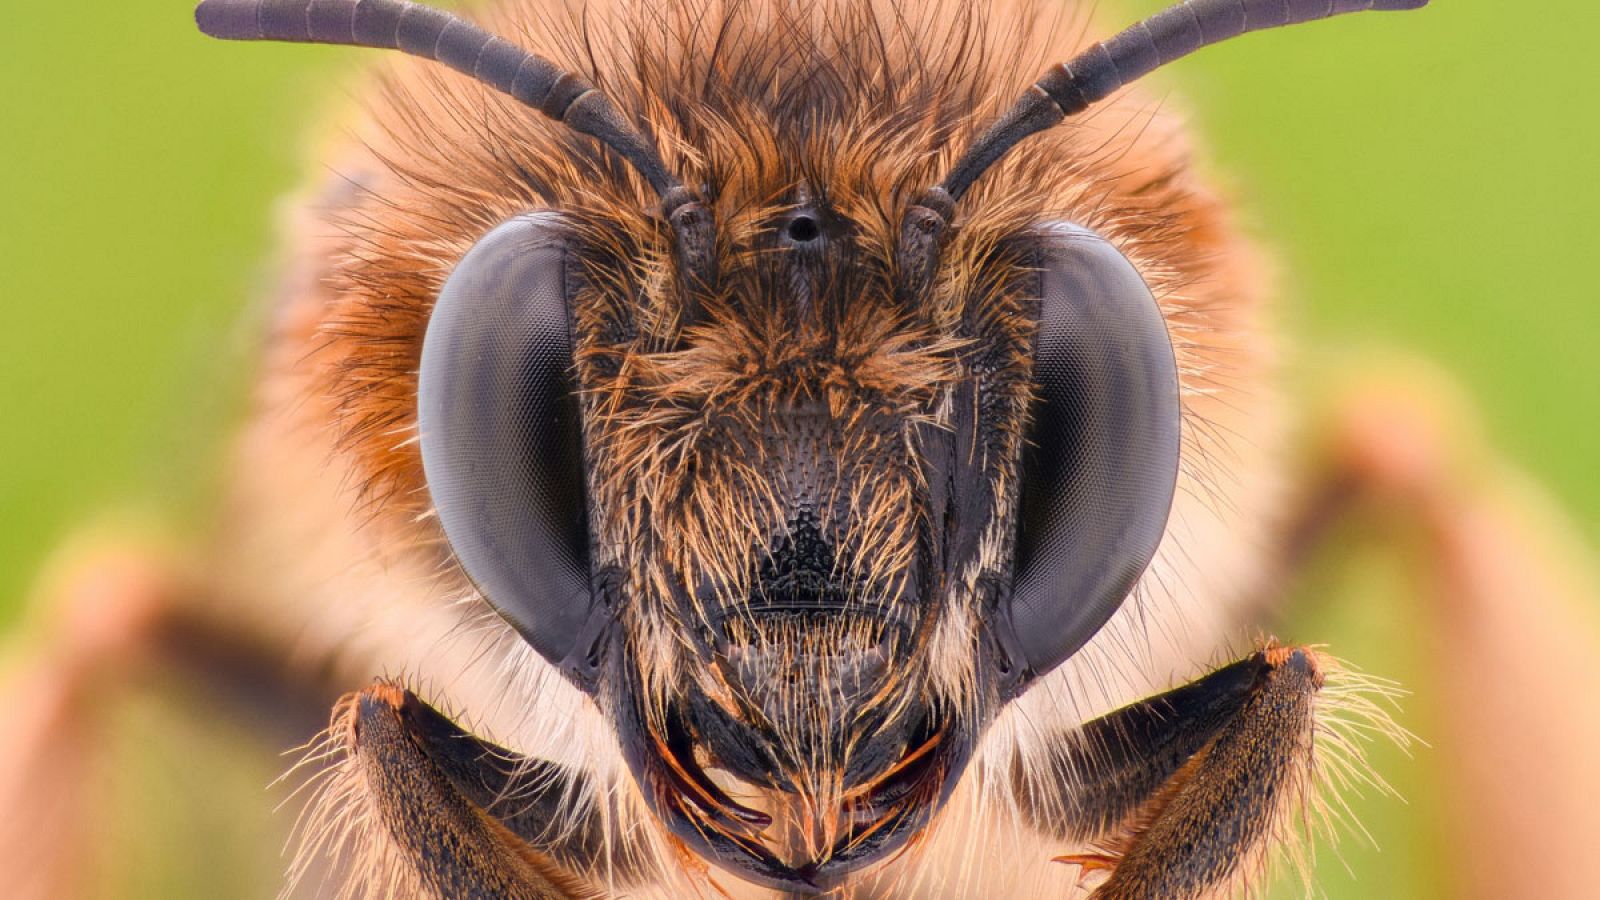 Las abejas de la miel de que viven en zonas altas son más grandes, más oscuras y su pelaje es más largo en comparación con las abejas de zonas bajas.